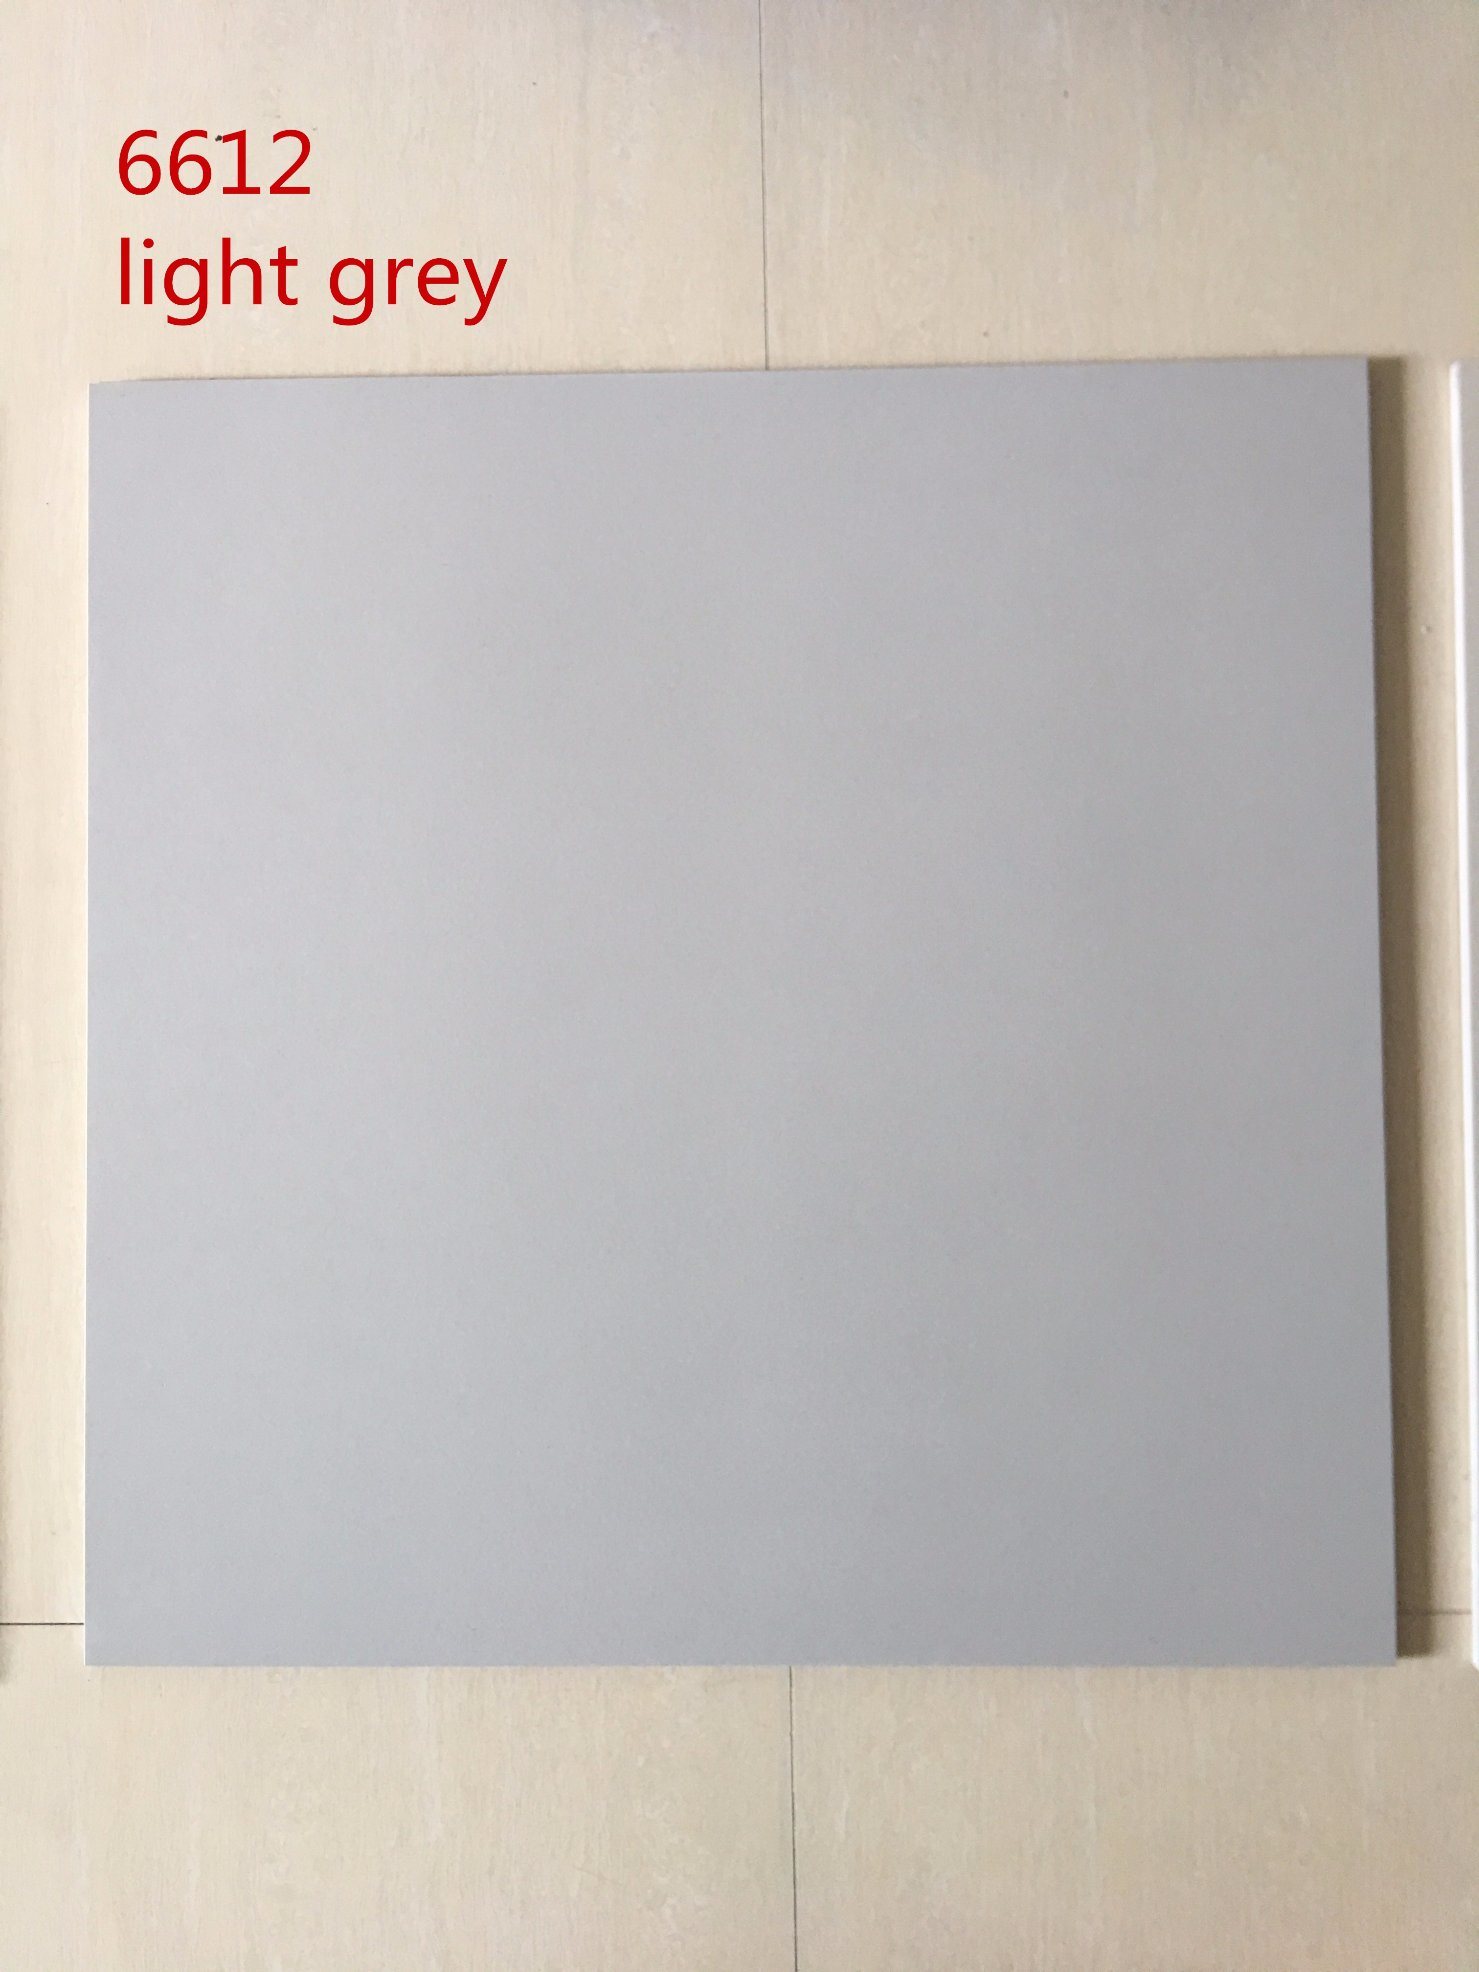 600X600 Pure azulejos de porcelana de color gris para el proyecto de suelos y paredes